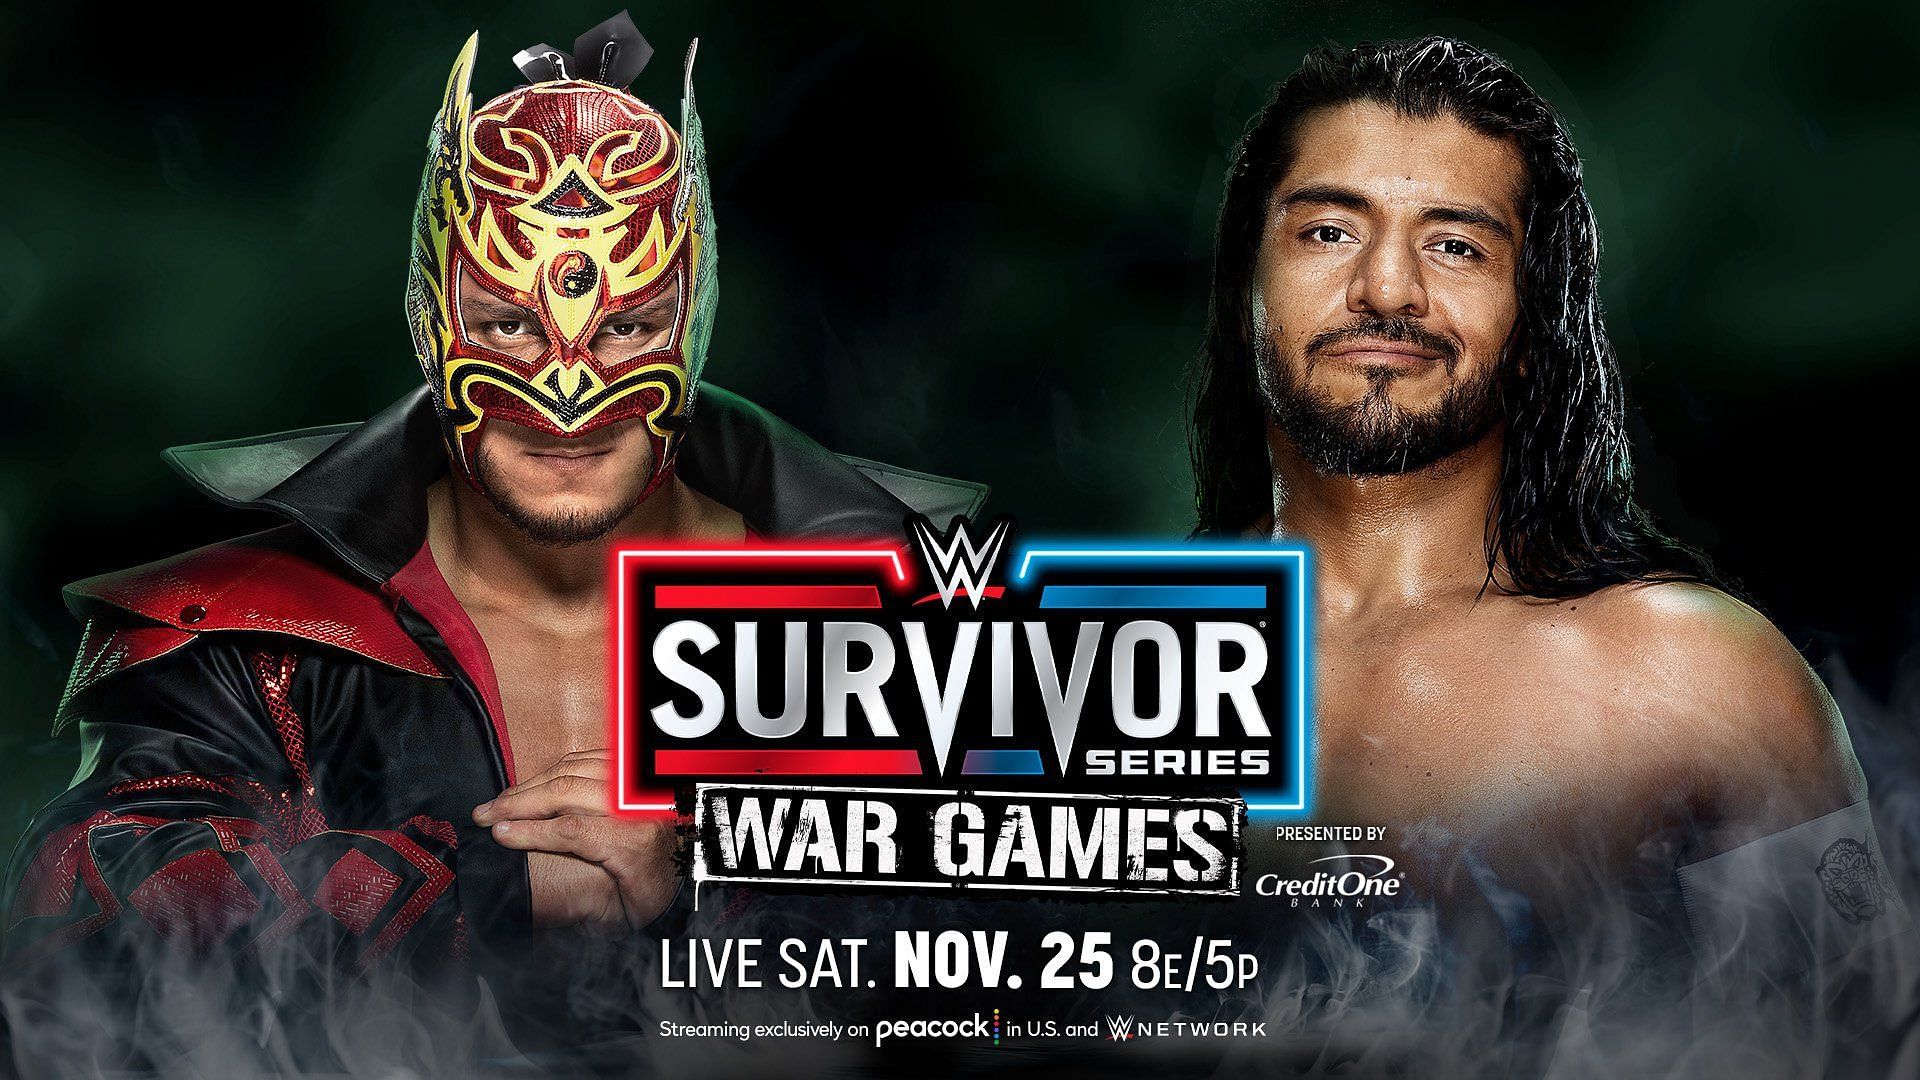 Dragon Lee will clash with Santos Escobar at WWE Survivor Series WarGames